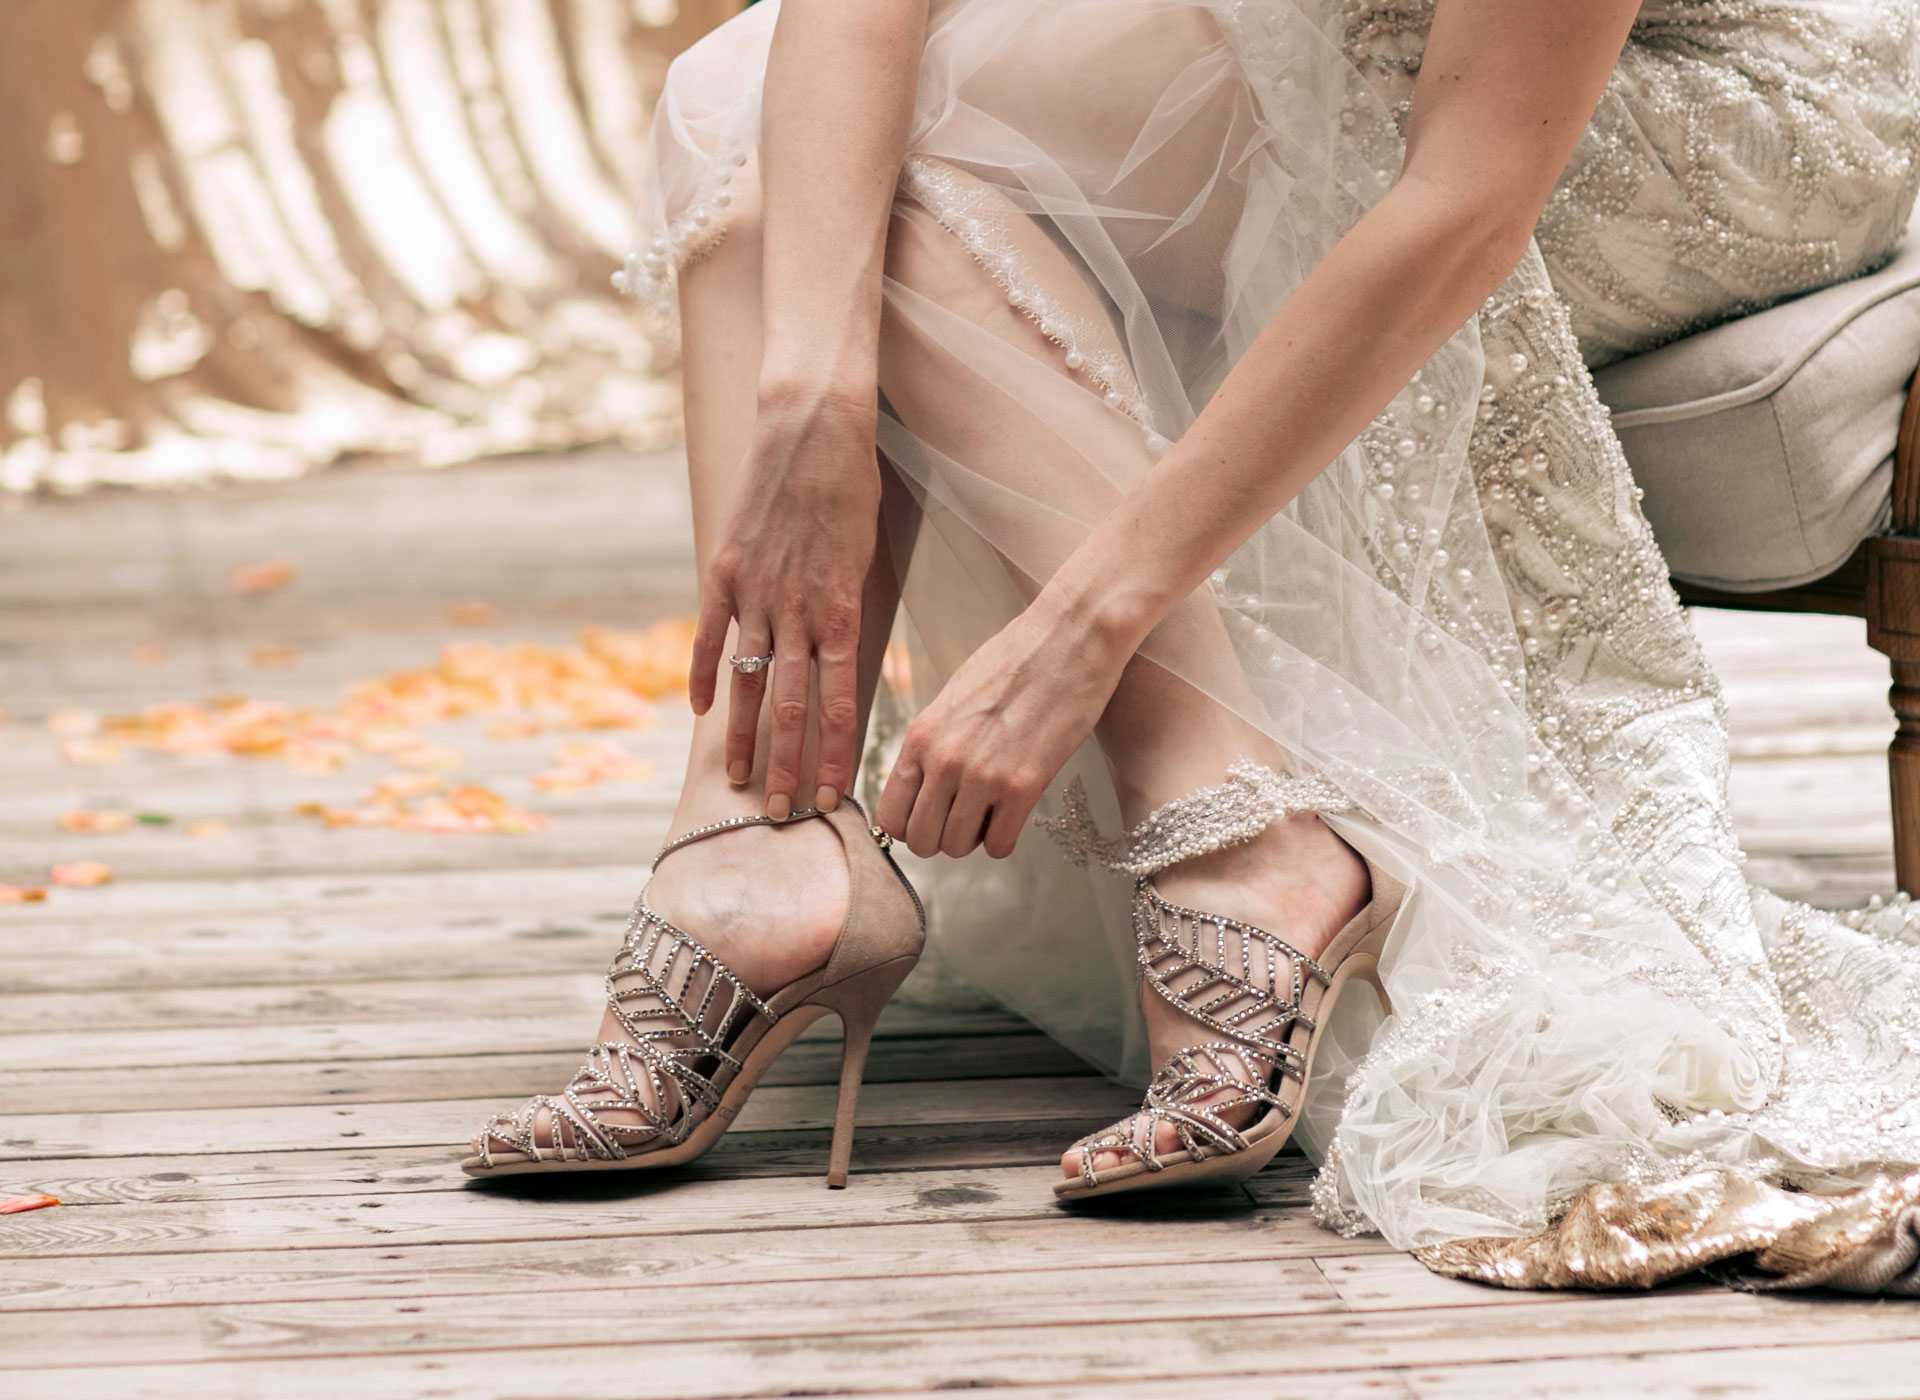 Свадебная обувь - важная составляющая любого образа жениха и невесты Она должна быть комфортной на приемлемой подошве подходить под общий праздничный вид Перед торжеством желательно походить в них по дому чтоб оценить удобство